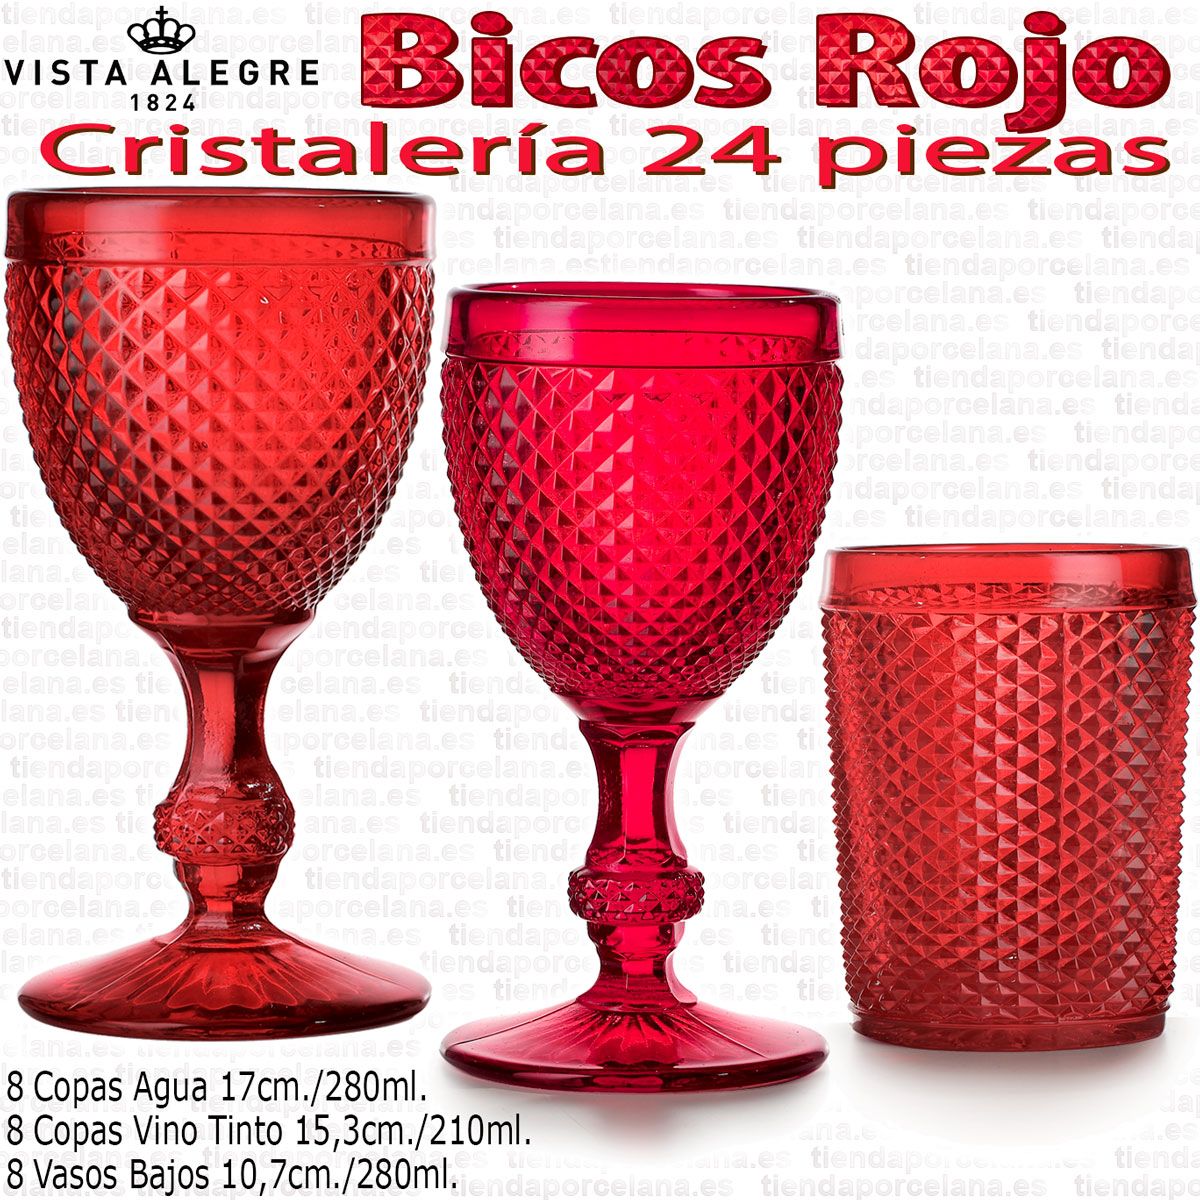 Cristalería 24 piezas Vista Alegre Picos / Bicos ROJO